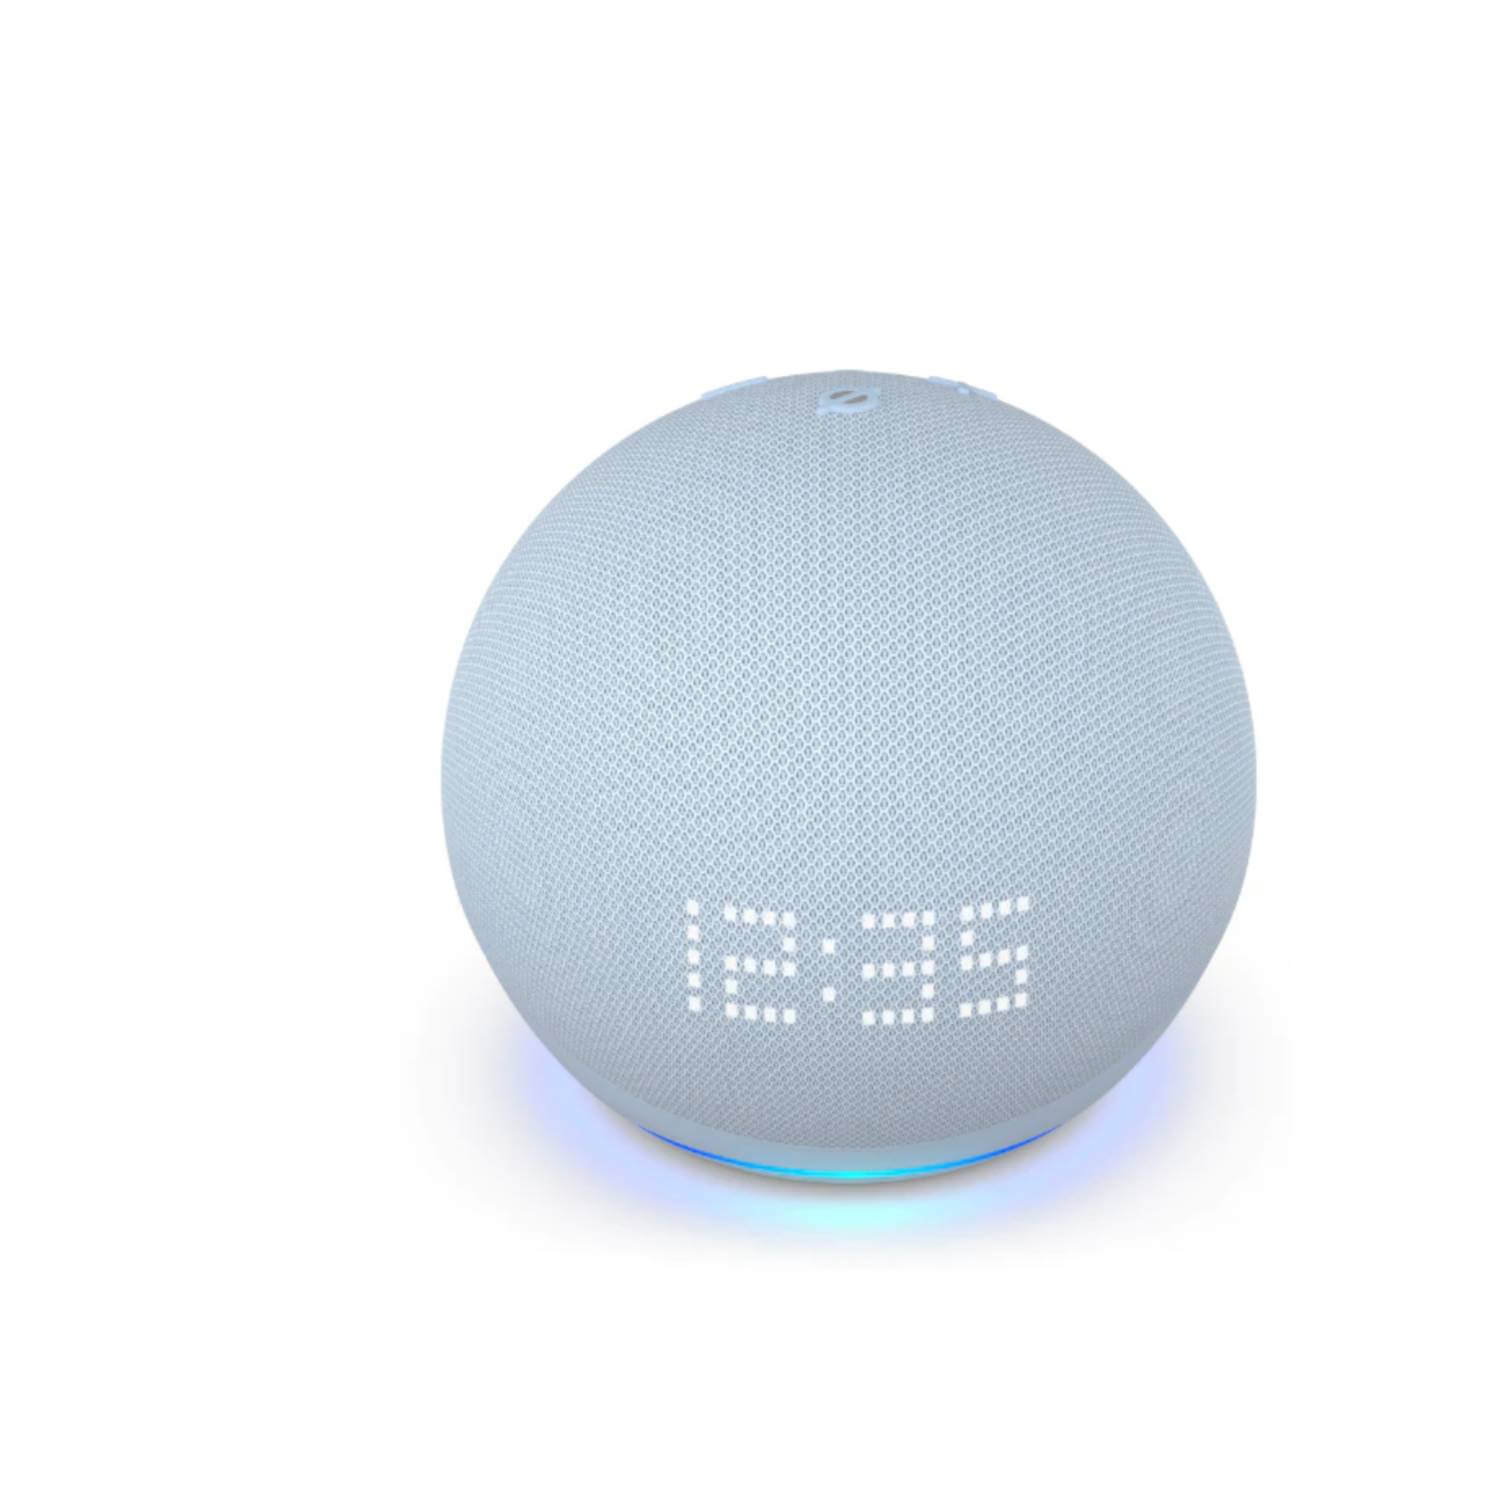 Alexa Parlante Inteligente Echo Dot 4ta Gen Asistente de voz